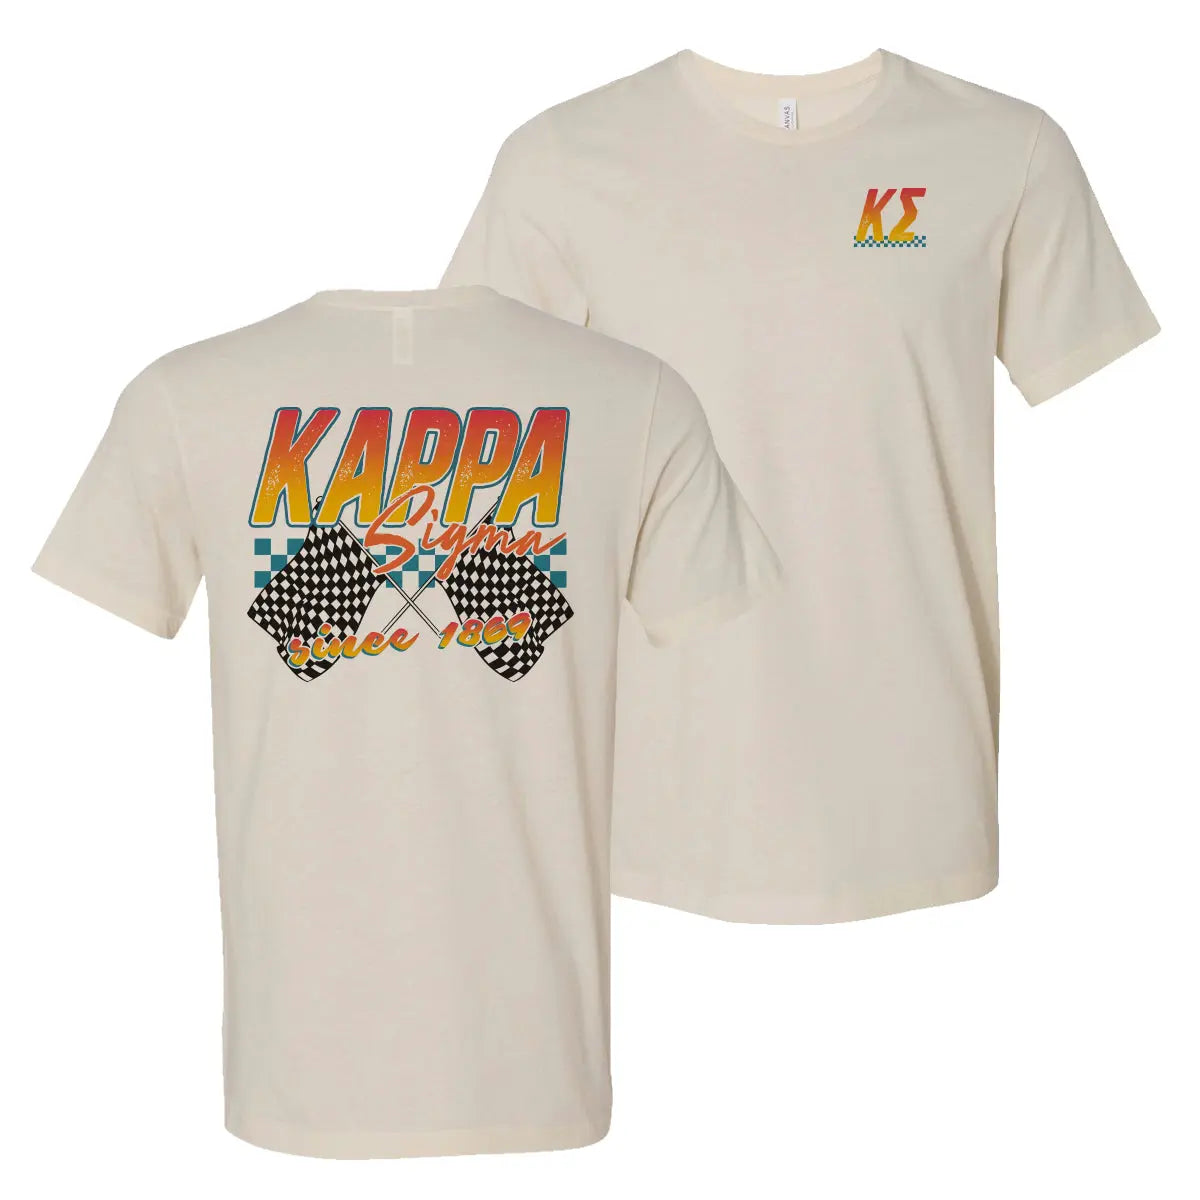 Kappa Sig Natural Raceway Short Sleeve Tee - Kappa Sigma Official Store